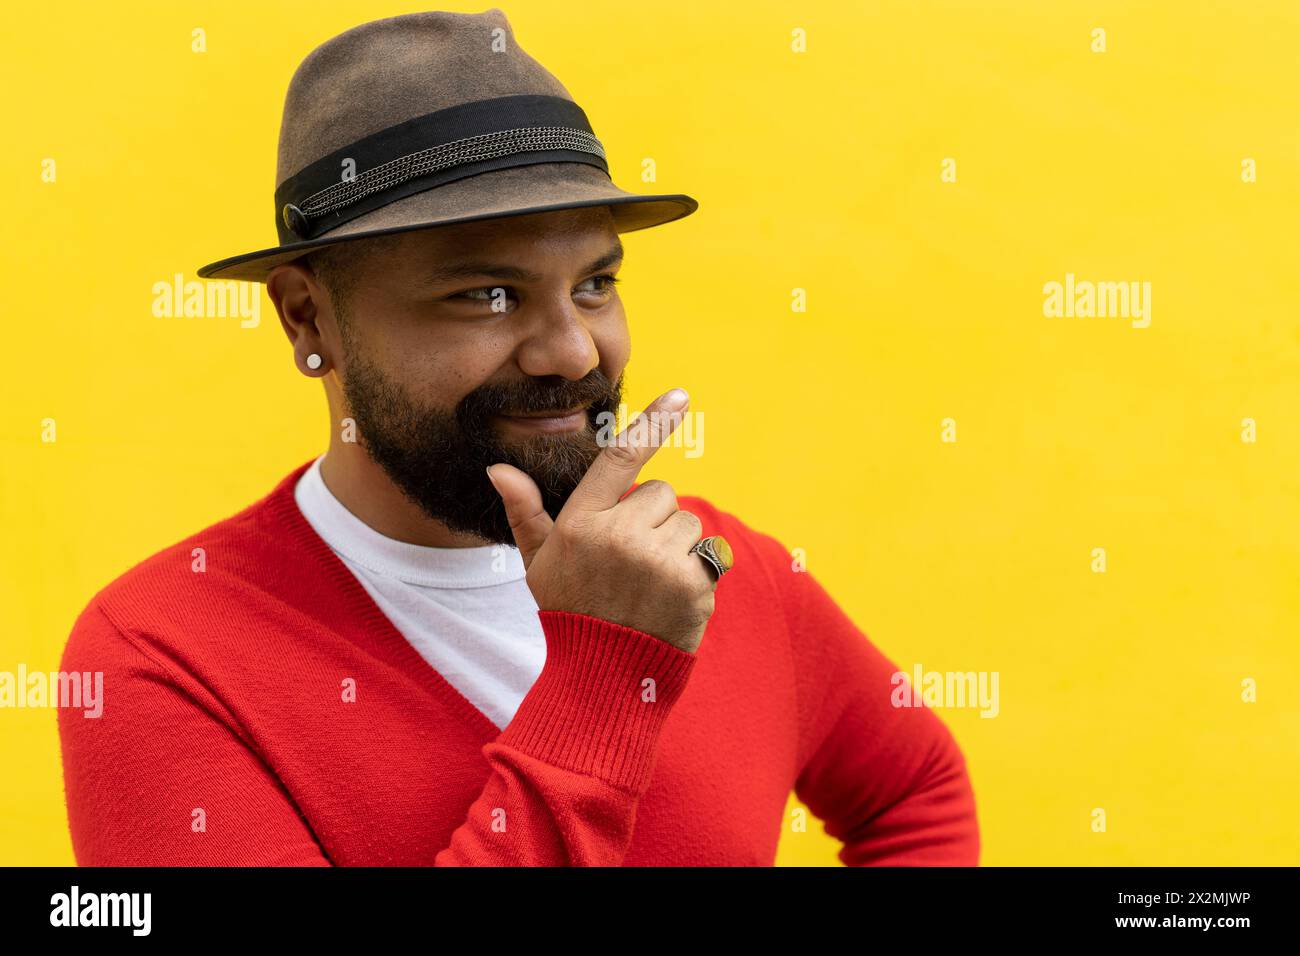 Uomo latino adulto (39) con barba, guarda alla sua destra con un gesto ottimista. Indossa cappello, maglione rosso e flanella bianca. Sfondo giallo Foto Stock